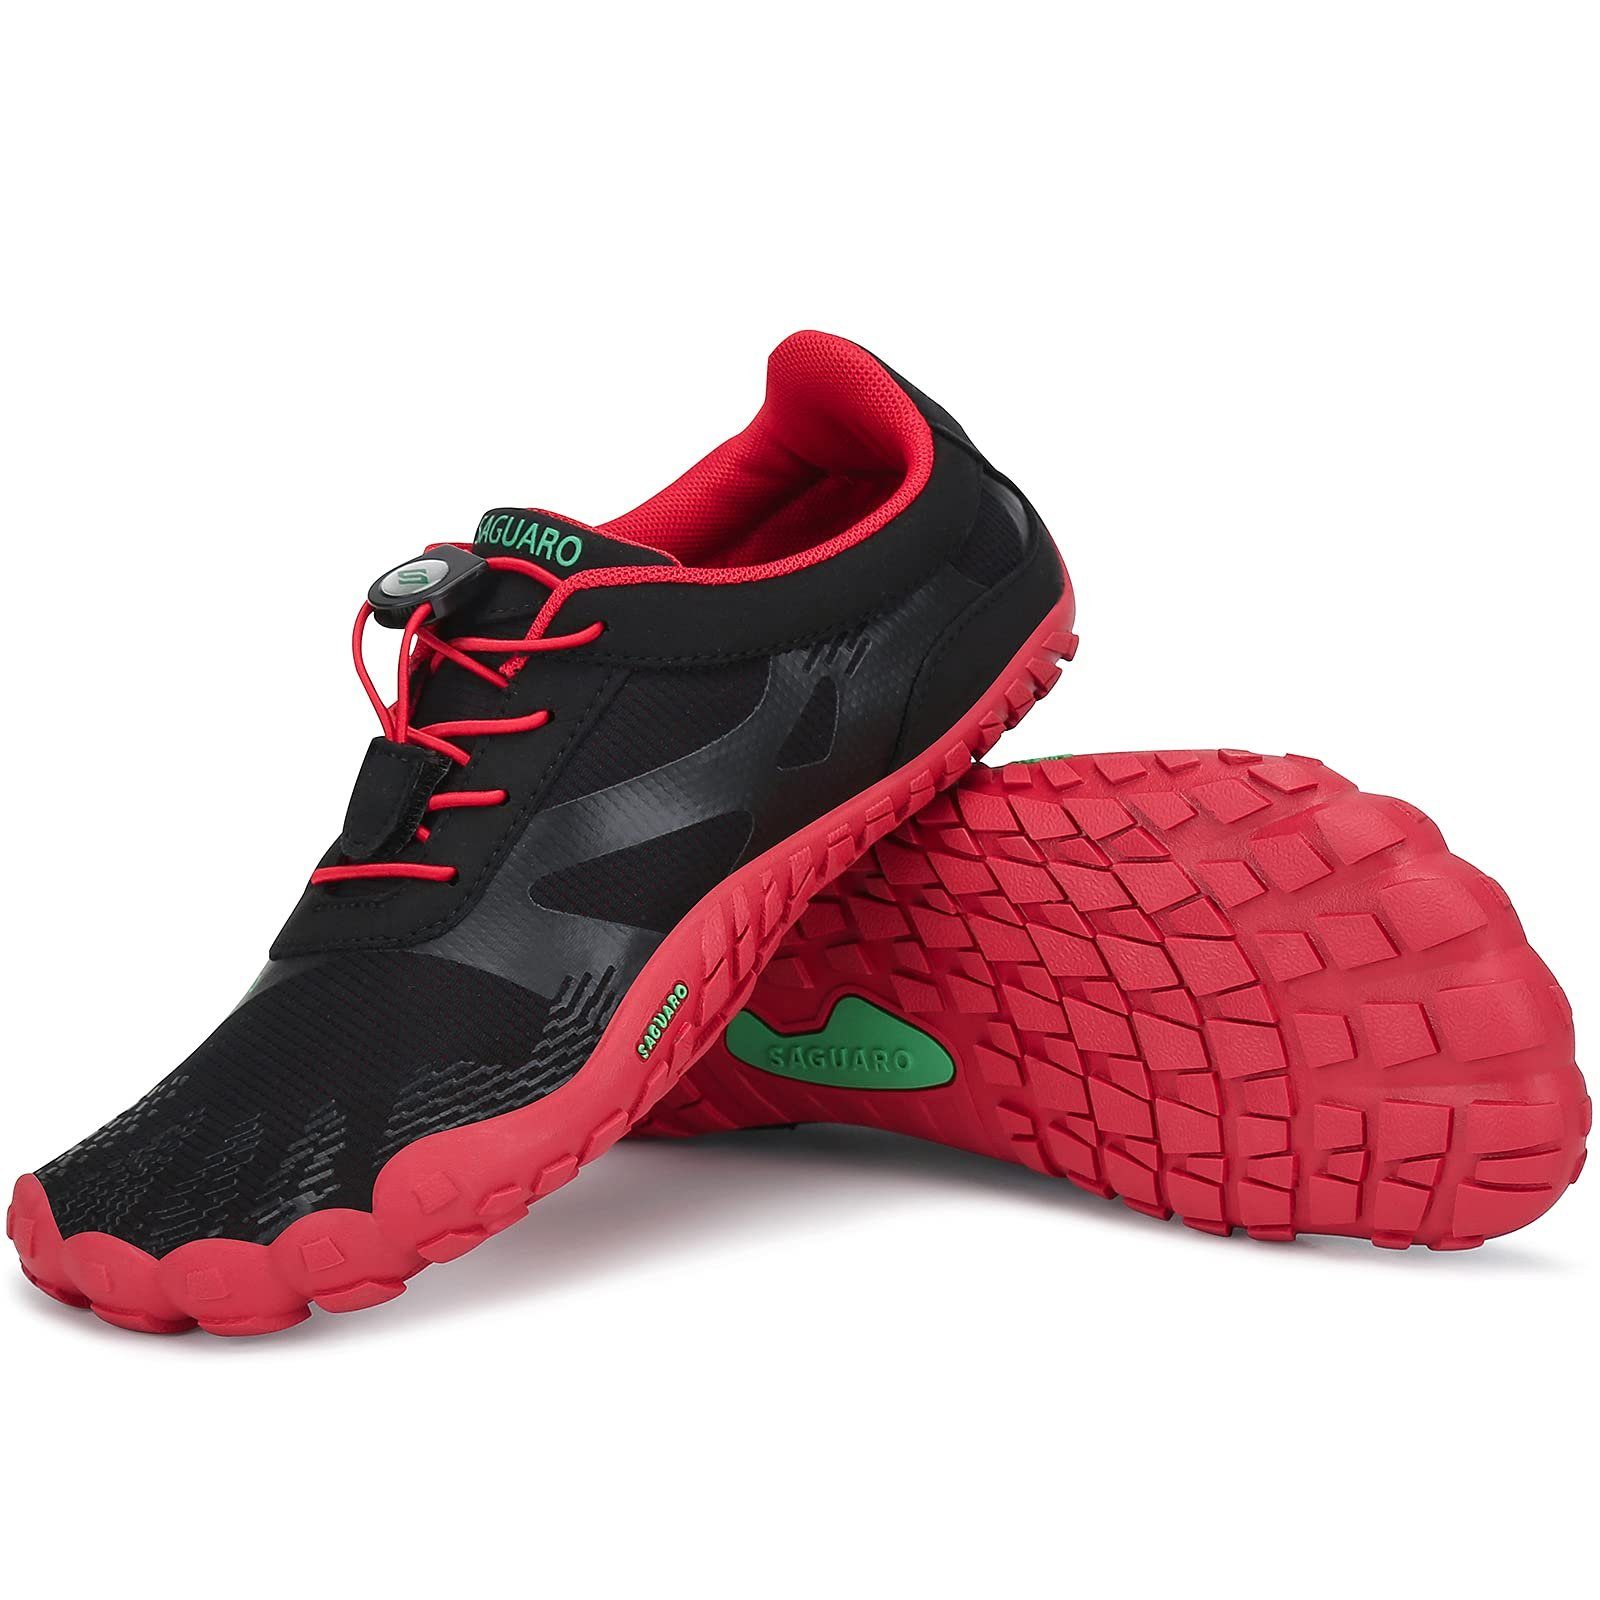 SAGUARO Barfußschuh (bequem, leicht, atmungsaktiv, rutschfest) Minimalschuhe Laufschuhe Sport-Schuhe Jogging Sneaker Trail-Running Rot 054